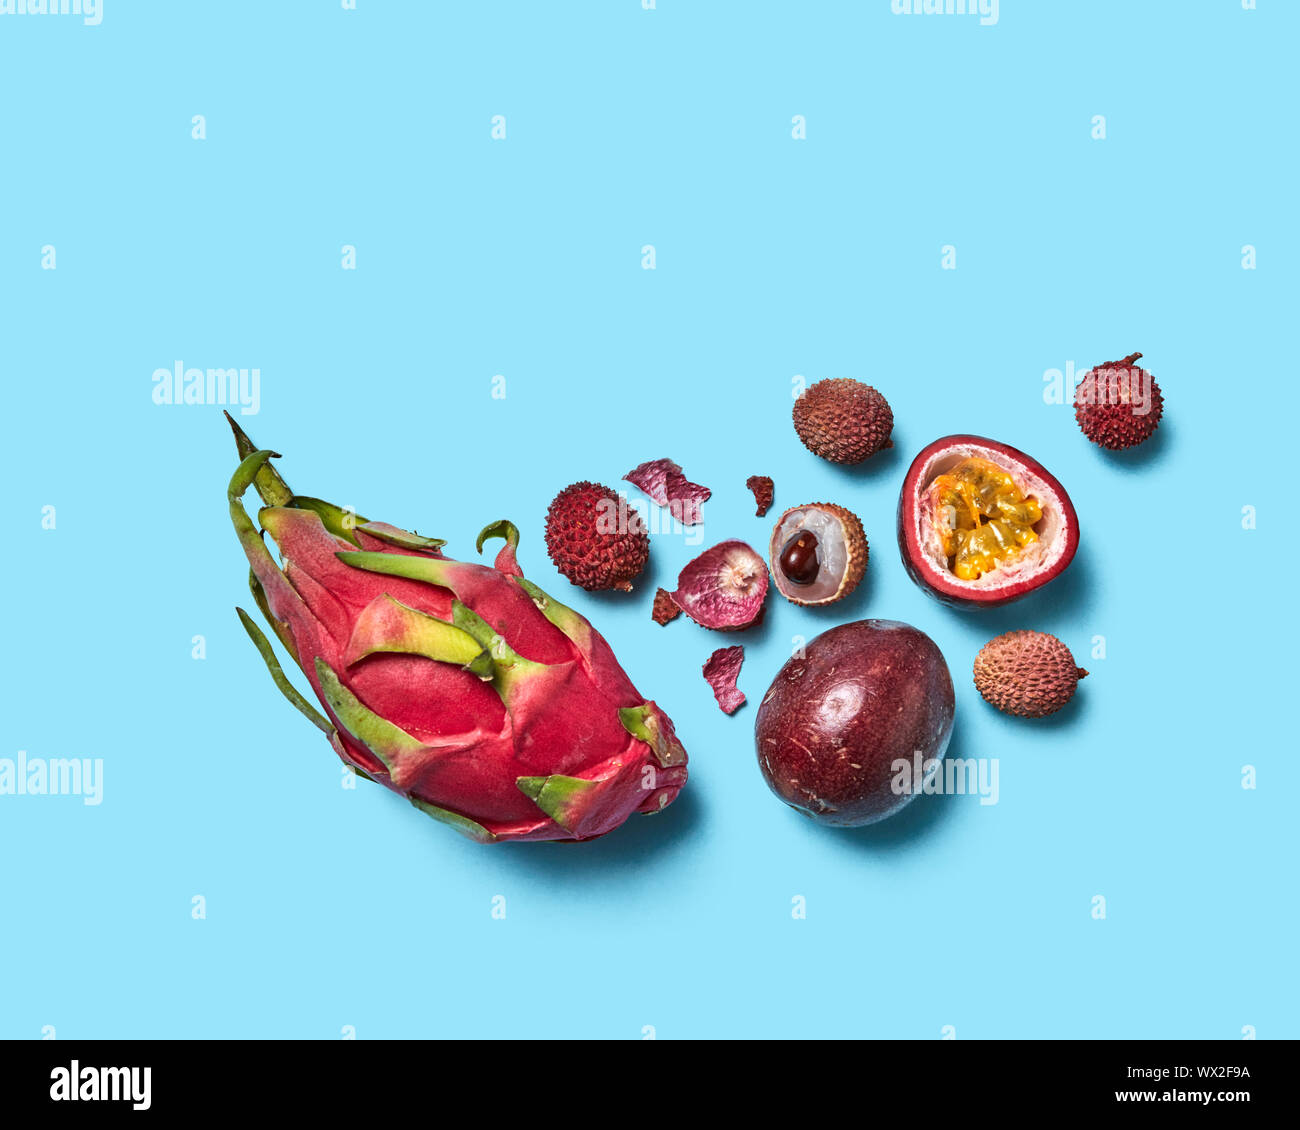 Saftige Hälften, ganze schälen und Früchte litschi Passionsfrucht und  pitahaya auf einem blauen Hintergrund mit Platz für Text. Flach  Stockfotografie - Alamy